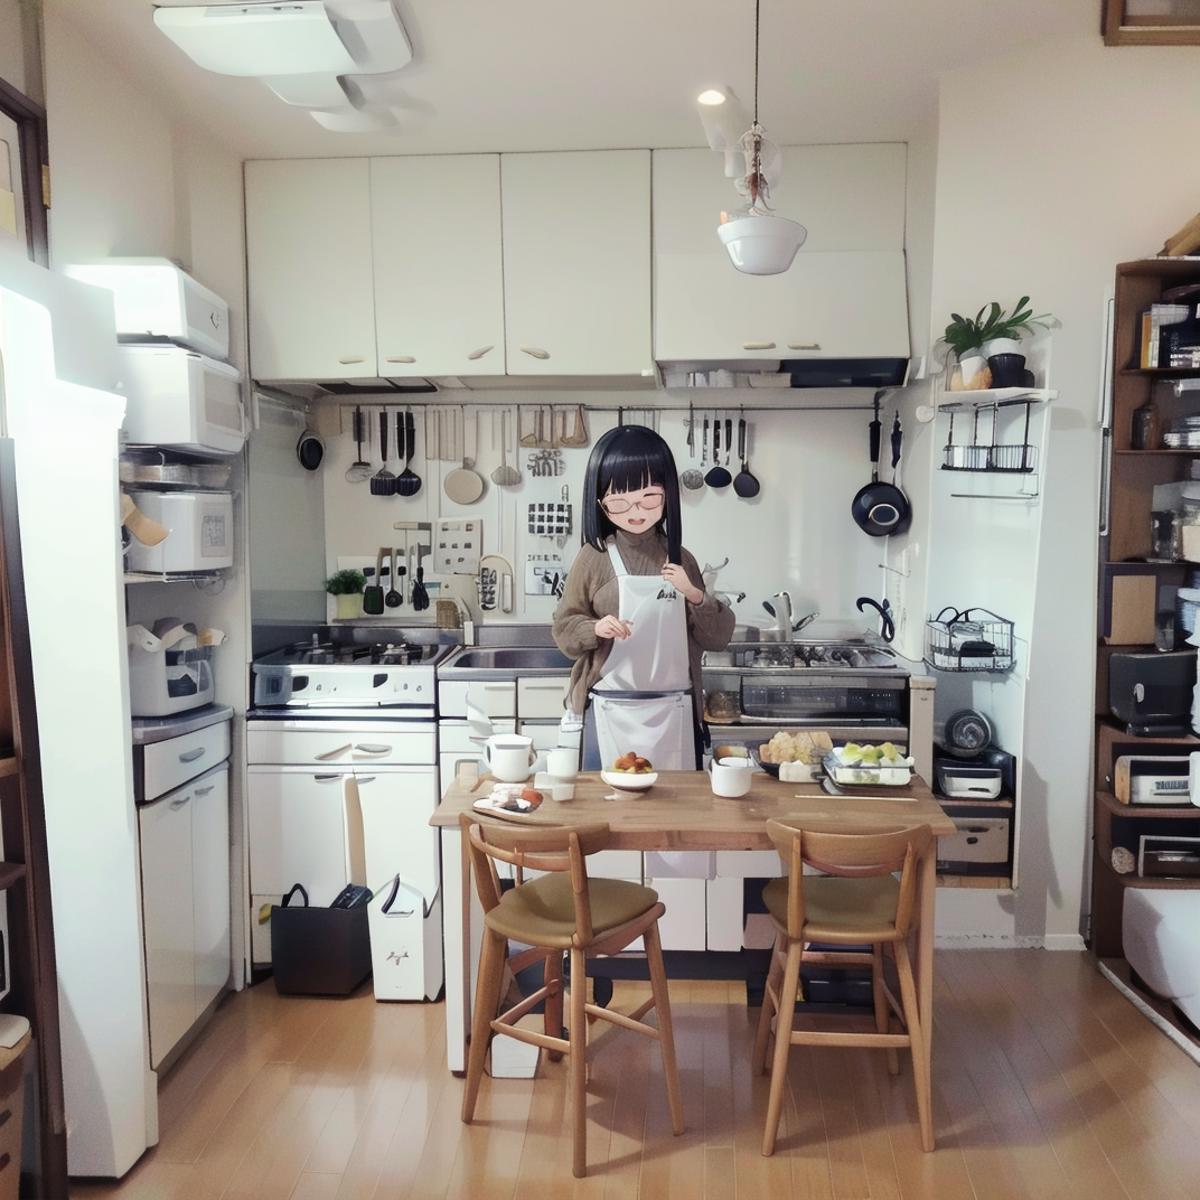 日本の住宅の台所 Kitchens in Japanese Housing Complexes SD15 image by swingwings